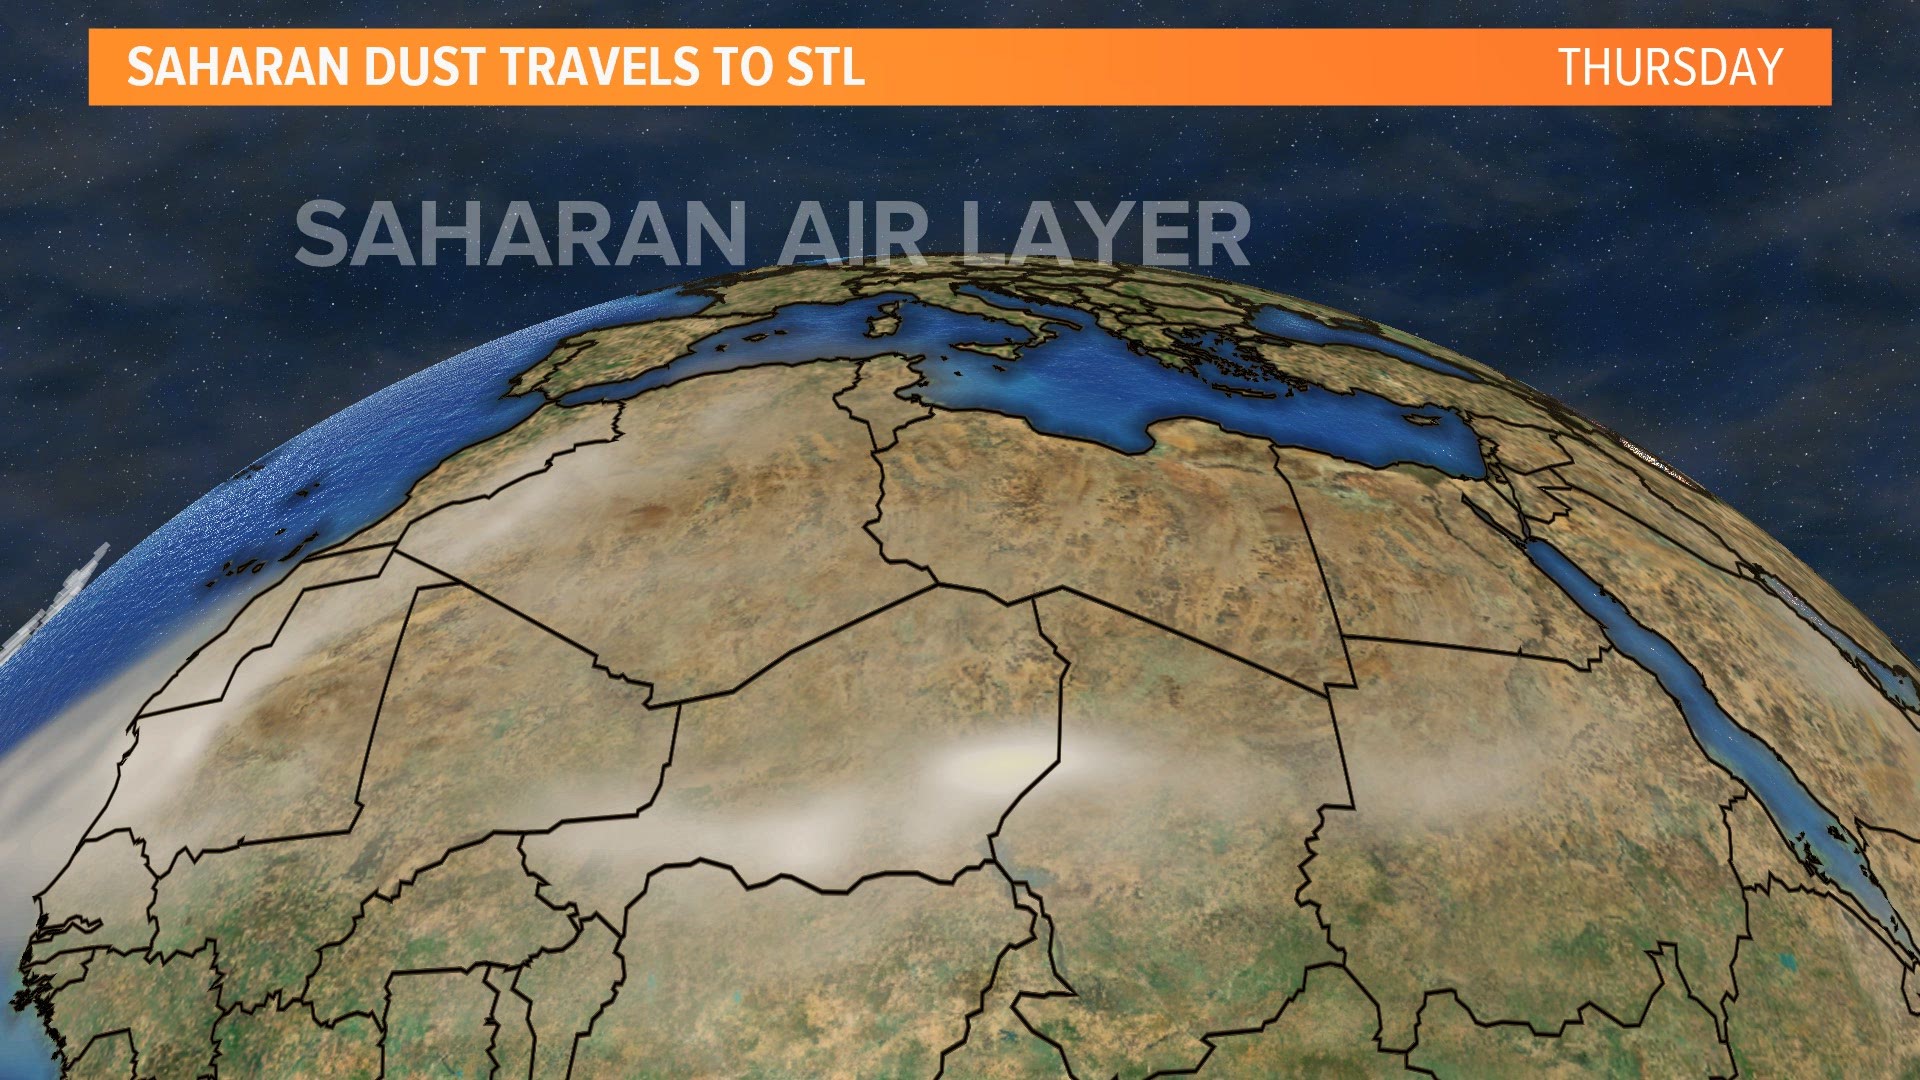 Saharan Dust Travels to STL